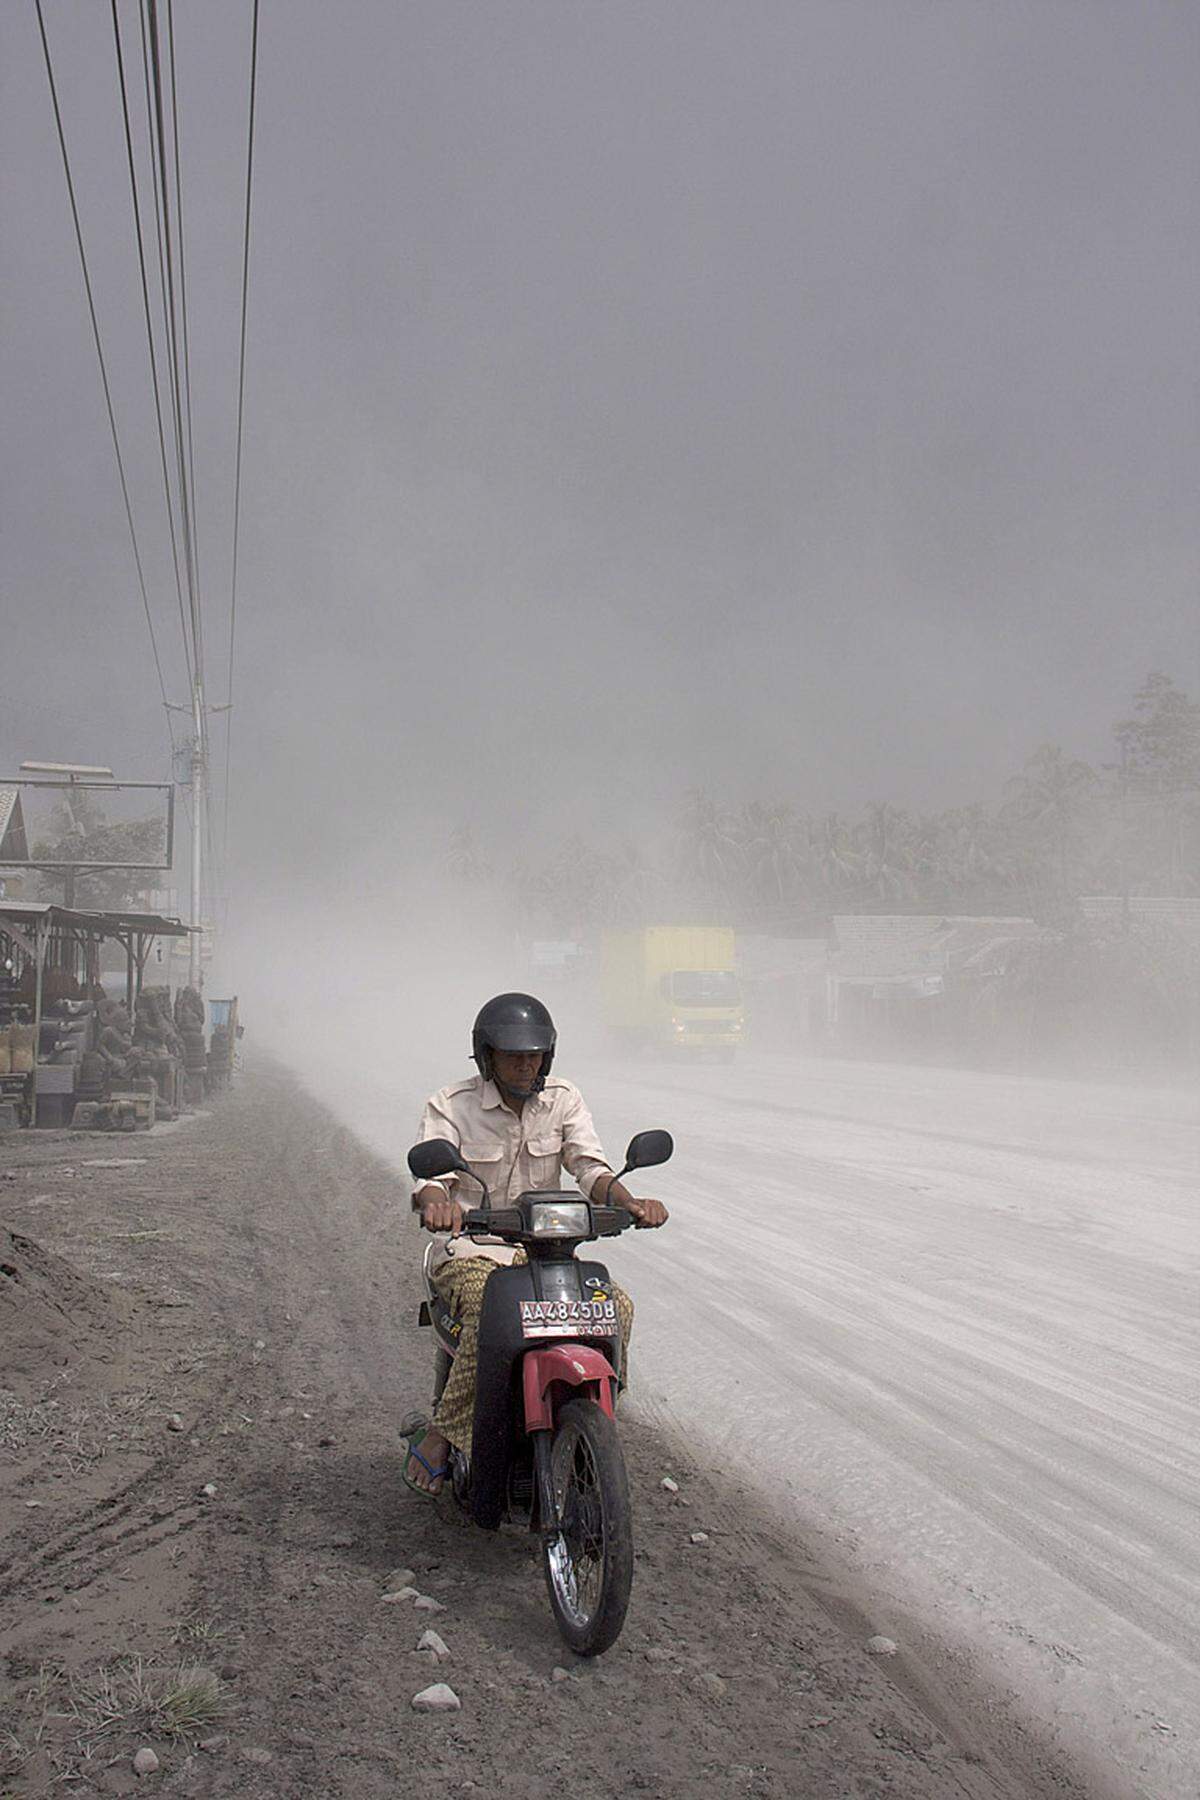 Nach Behördenangaben verbrannte die heiße Vulkanasche umliegende Dörfer in bis zu 18 Kilometer Entfernung. Aufgrund der Angaben von Rettungskräften über das Ausmaß der Zerstörungen wurde vermutet, dass unter den Opfern viele Kinder aus dem achtzehn Kilometer vom Vulkan entfernten Dorf Argomulyo waren.